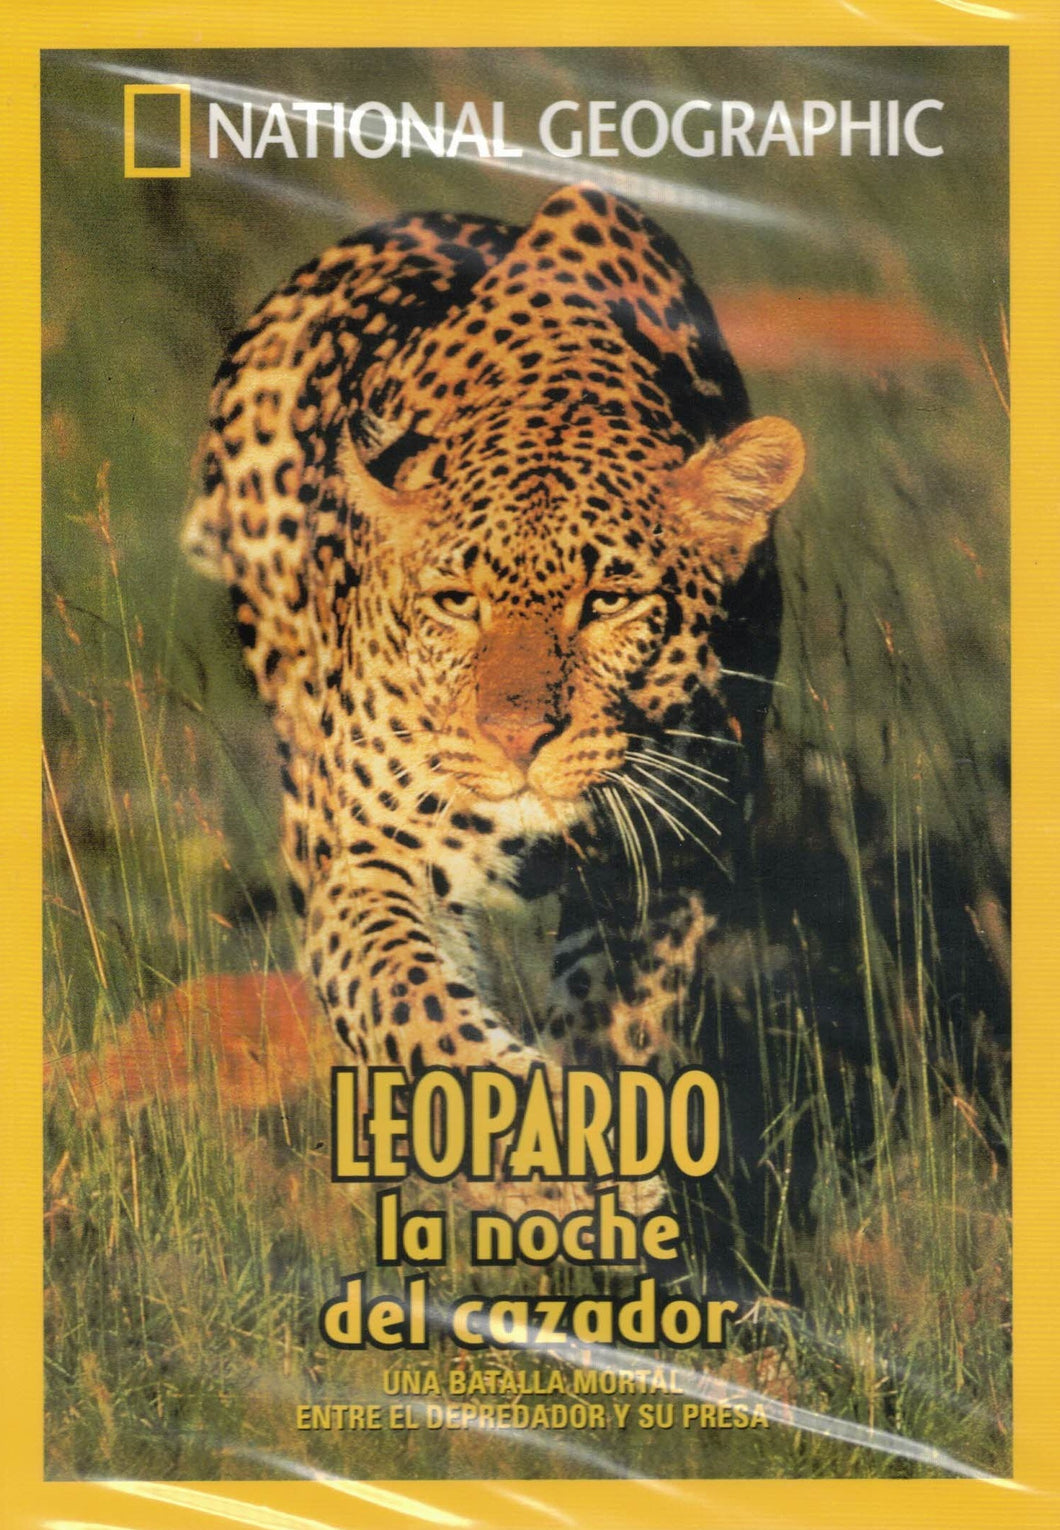 Leopardo - La Noche del Cazador - NATIONAL GEOGRAPHIC (DVD) C-198 (NUEVO)